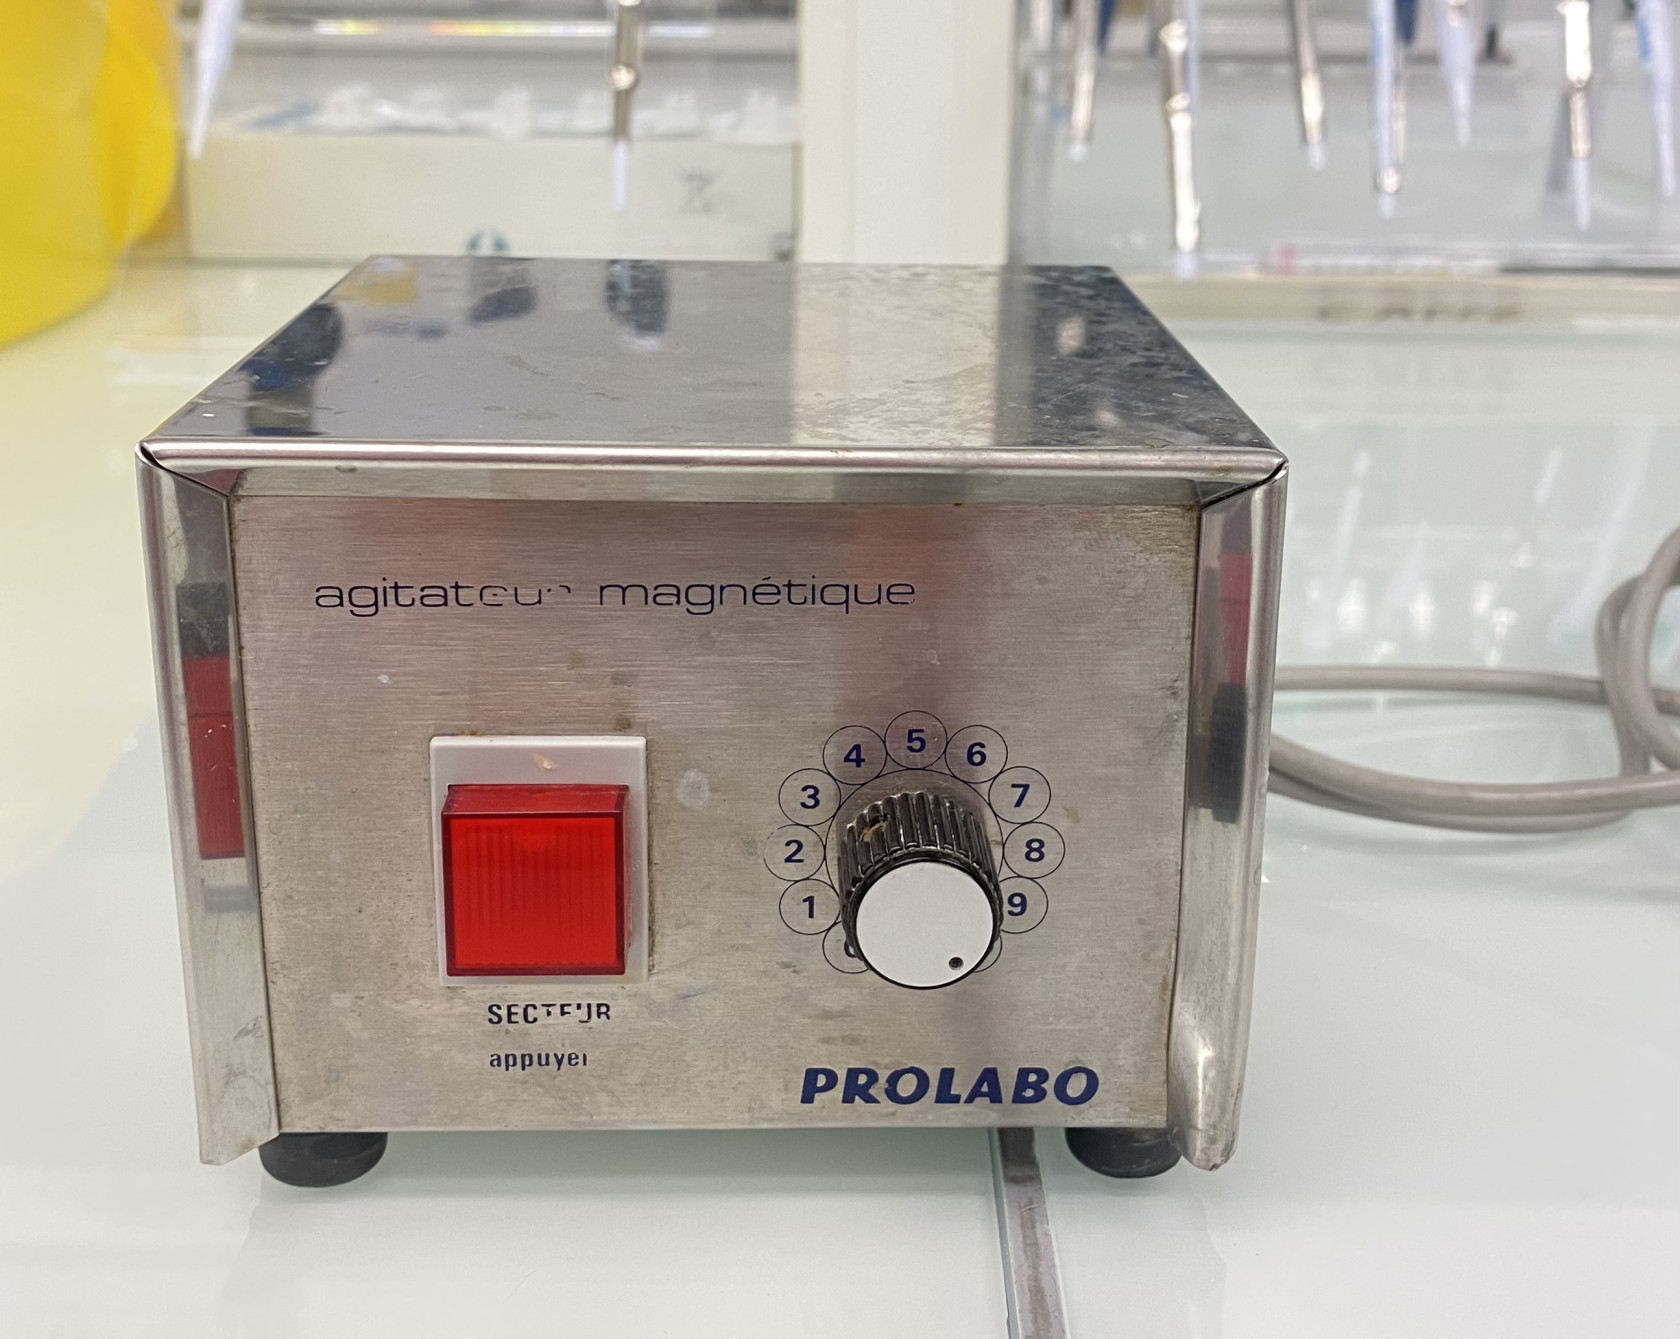 Prolabo - agitateur magnetique.jpeg